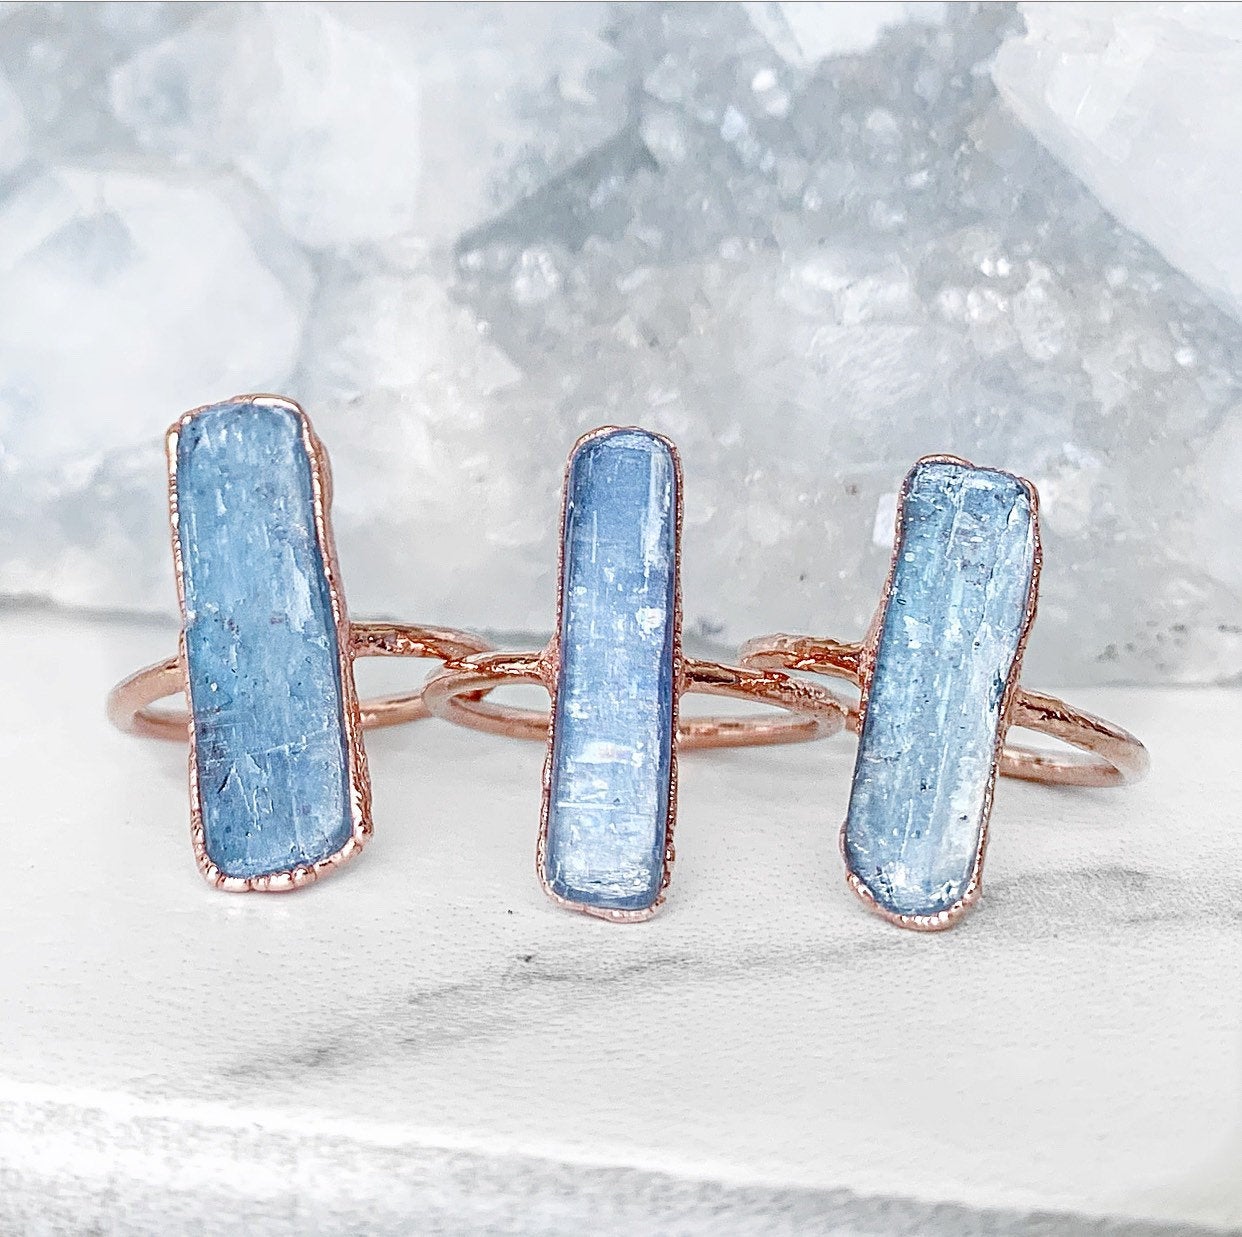 Blue Kyanite Ring, Taurus Birthstone Ring, Kyanite Blade Ring, Raw Kyanite Jewelry, Blue Crystal Statement Ring, Healing Copper Ring